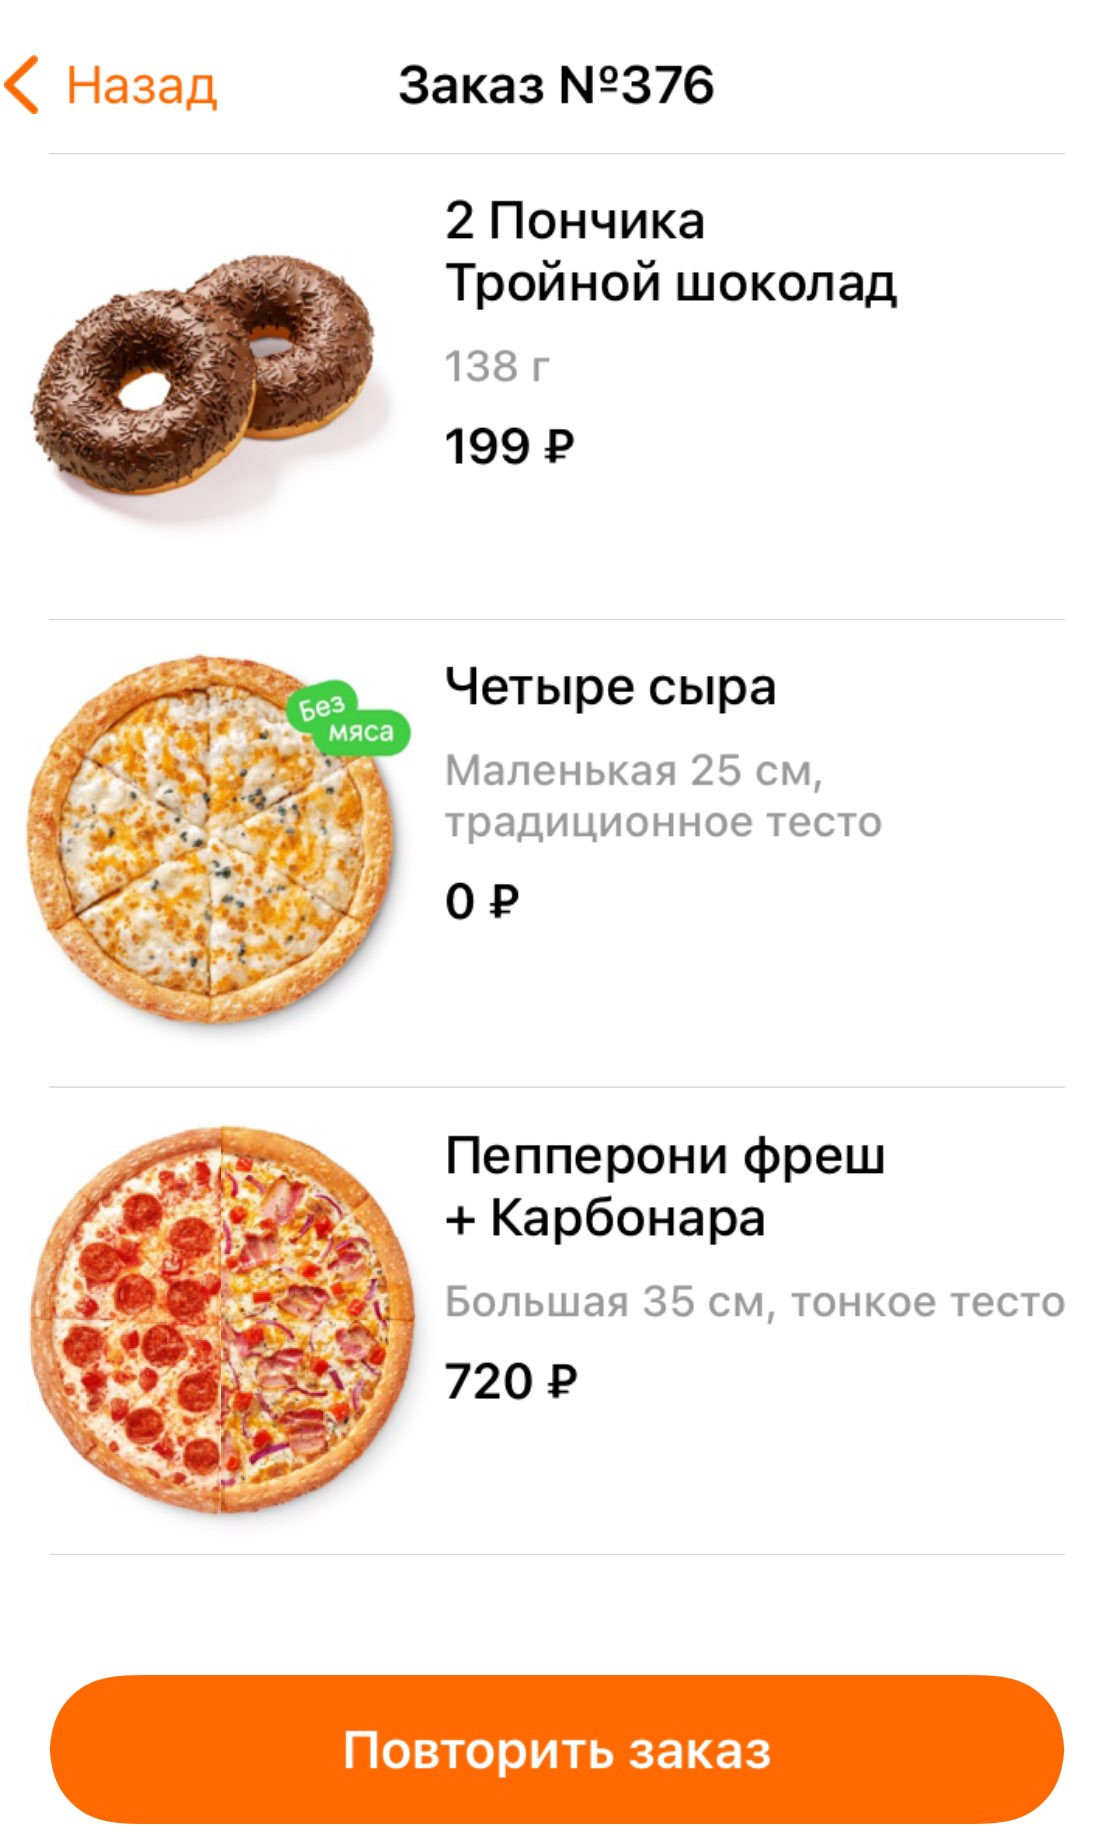 сколько стоит пепперони фреш в додо пицца фото 62